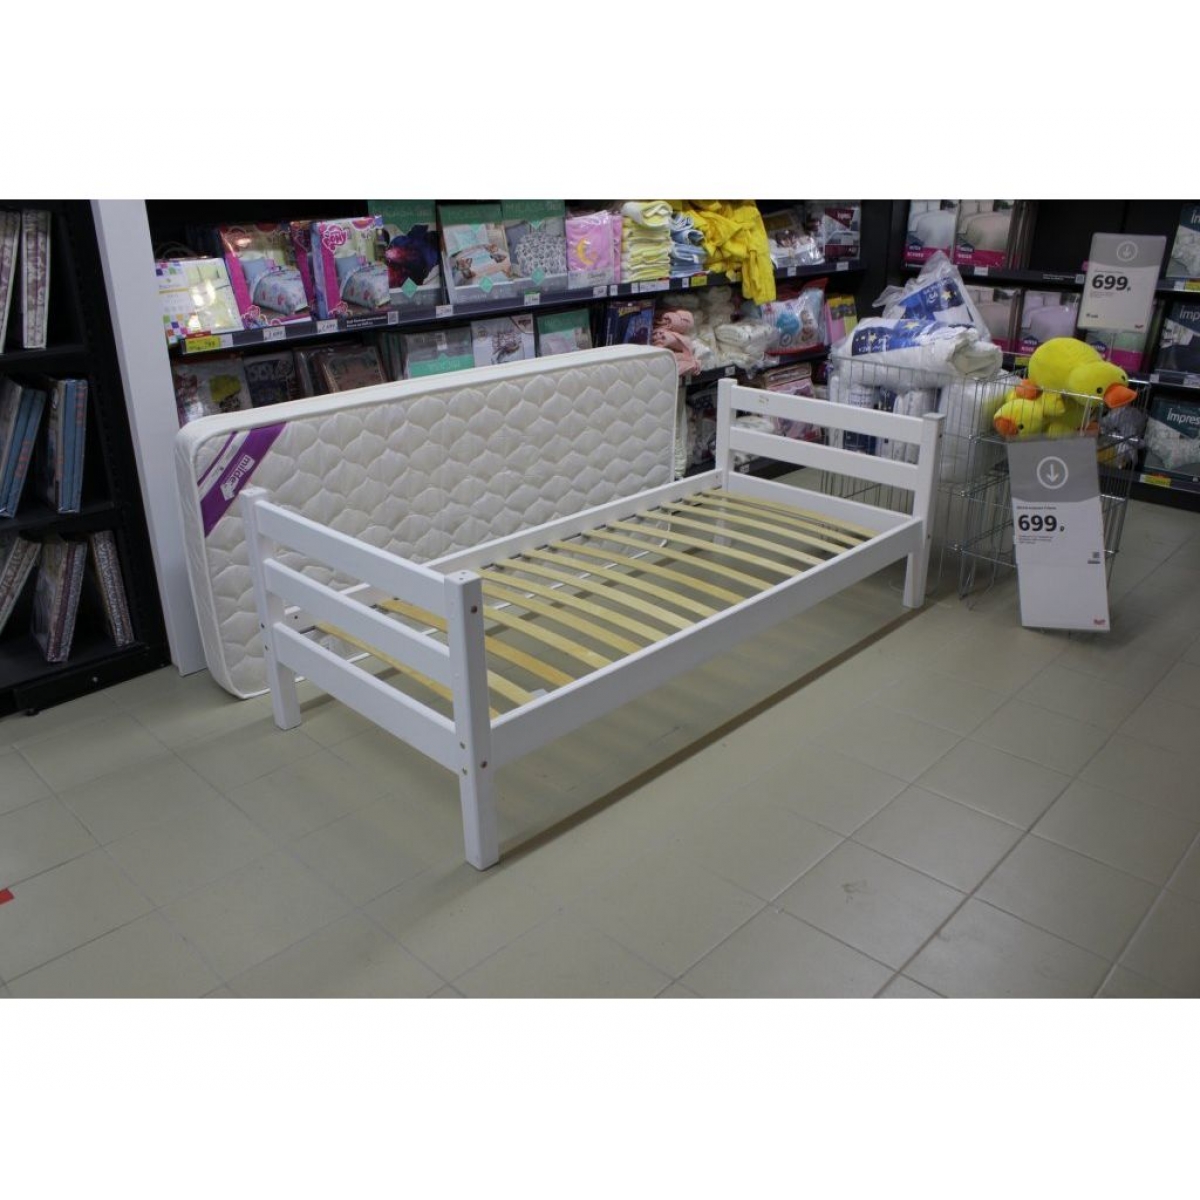 Кровать Соня Вариант 1 (белая)